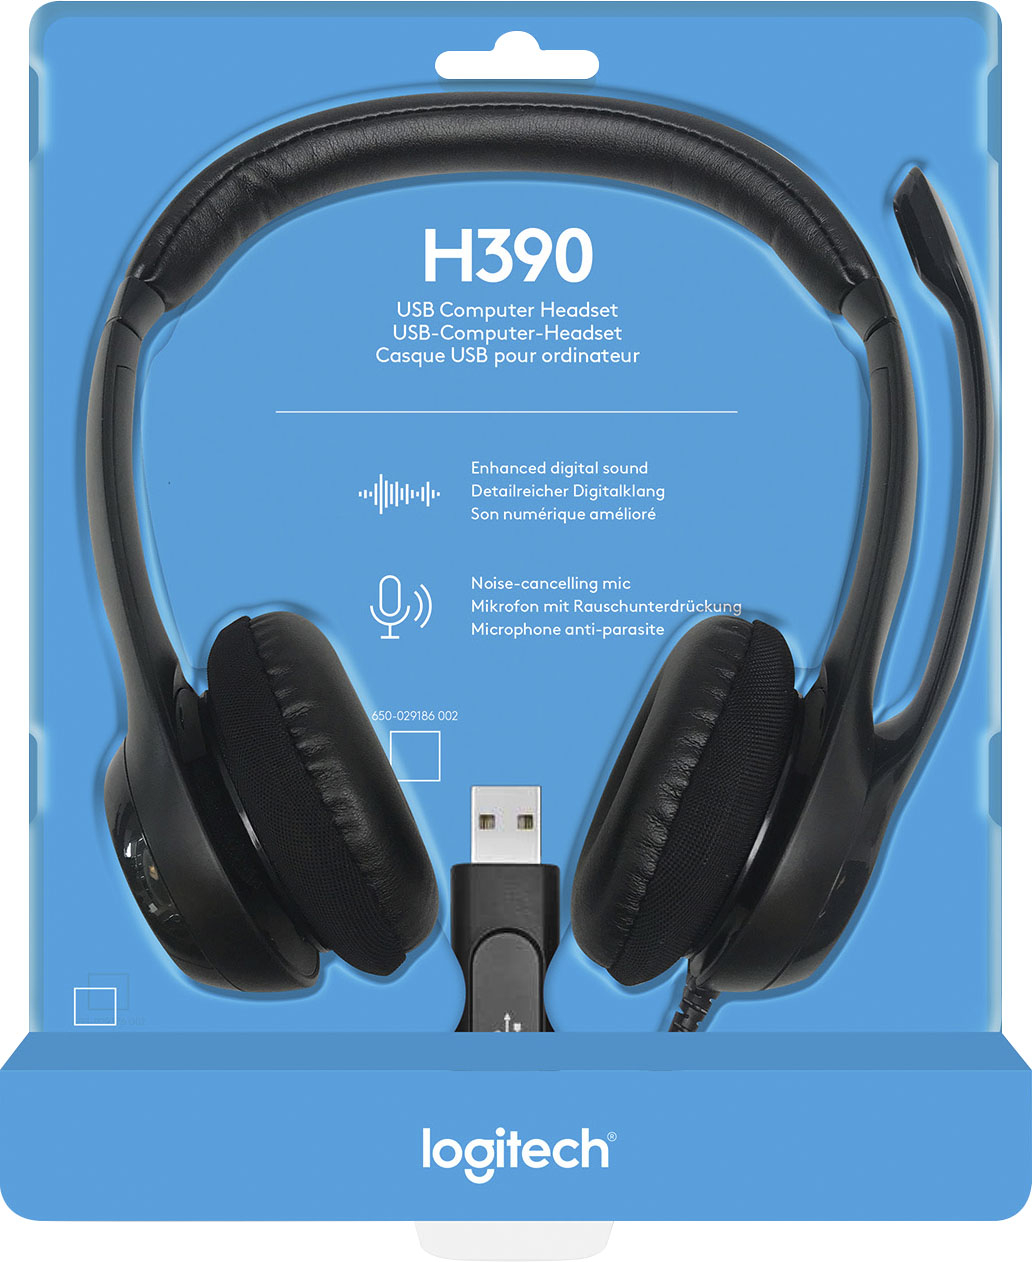 Afskrække Variant Drik vand Logitech H390 Wired USB Noise-Cancelling On-Ear Headset Black 981-000014 -  Best Buy